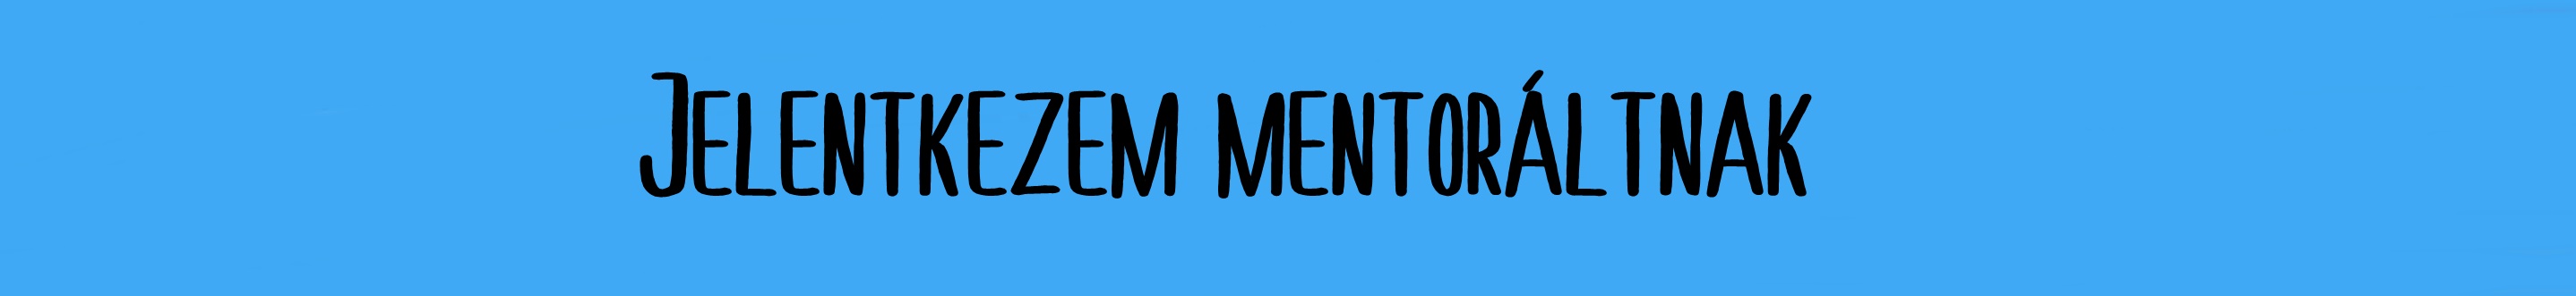 mentorált jel_2